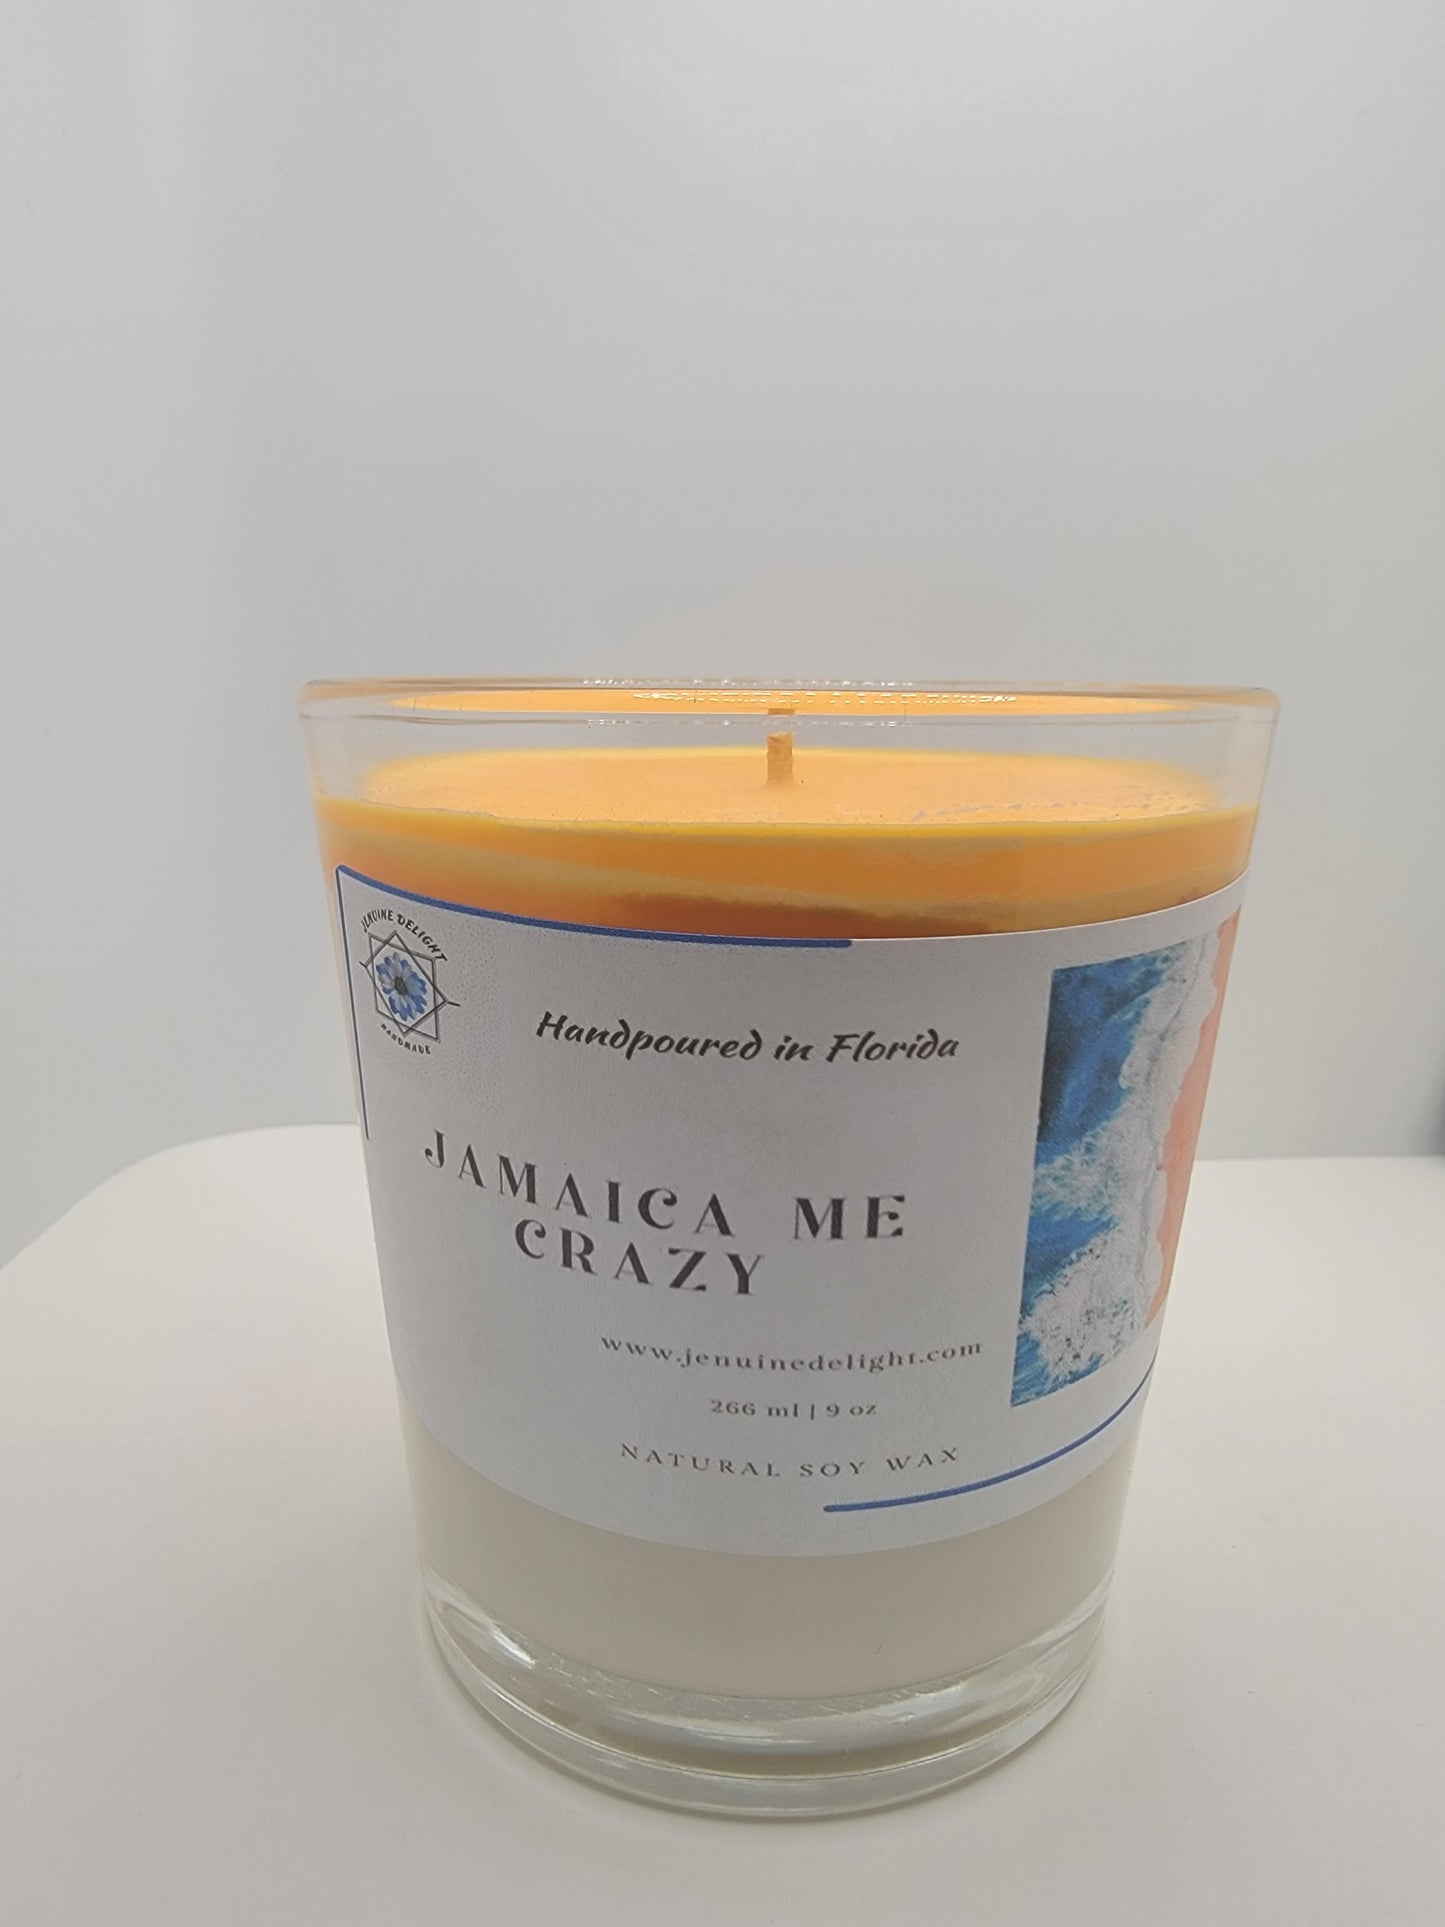 Jamaica me crazy candle